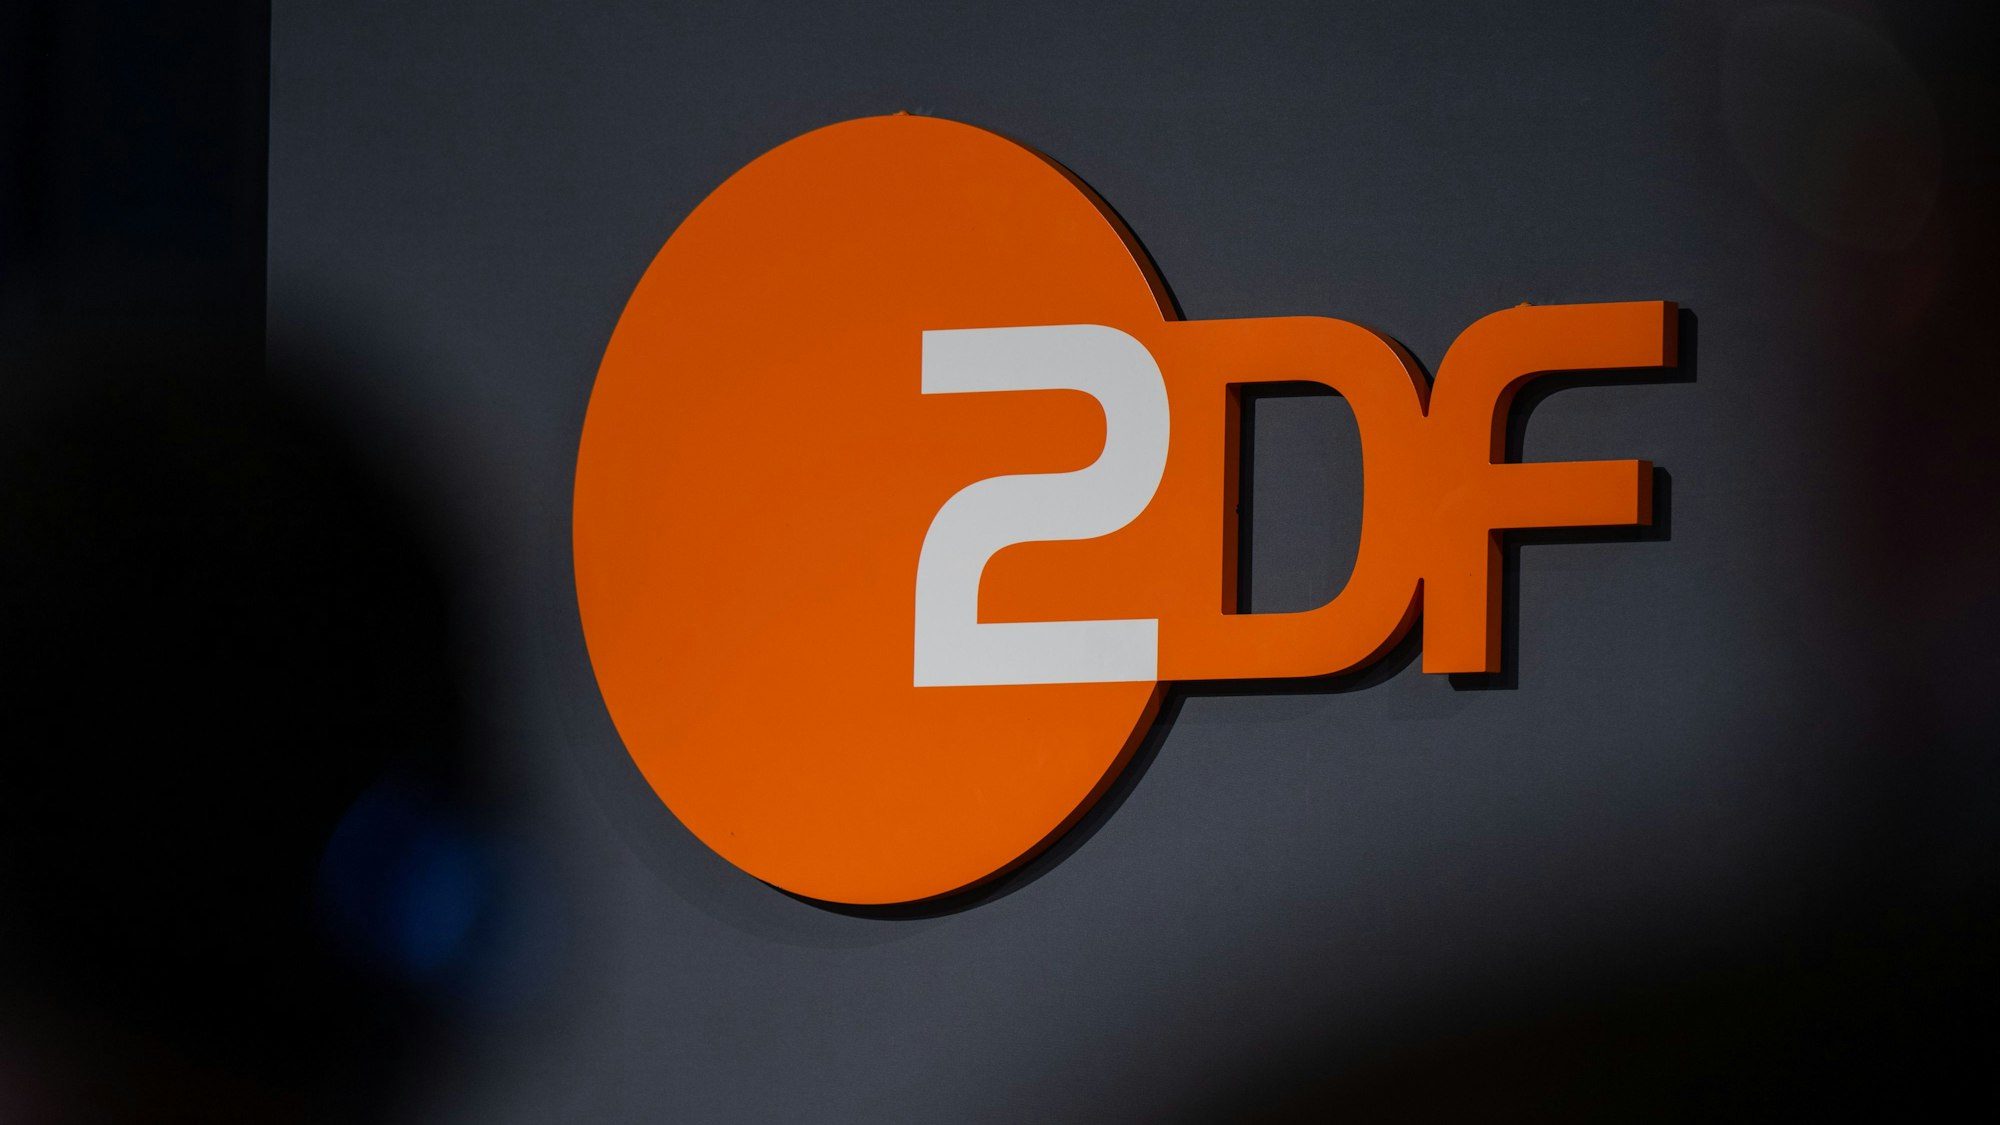 Das Logo der öffentlich-rechtlichen Rundfunkanstalt Zweites Deutsches Fernsehen (ZDF), aufgenommen bei der Digital-Konferenz „Republica“.